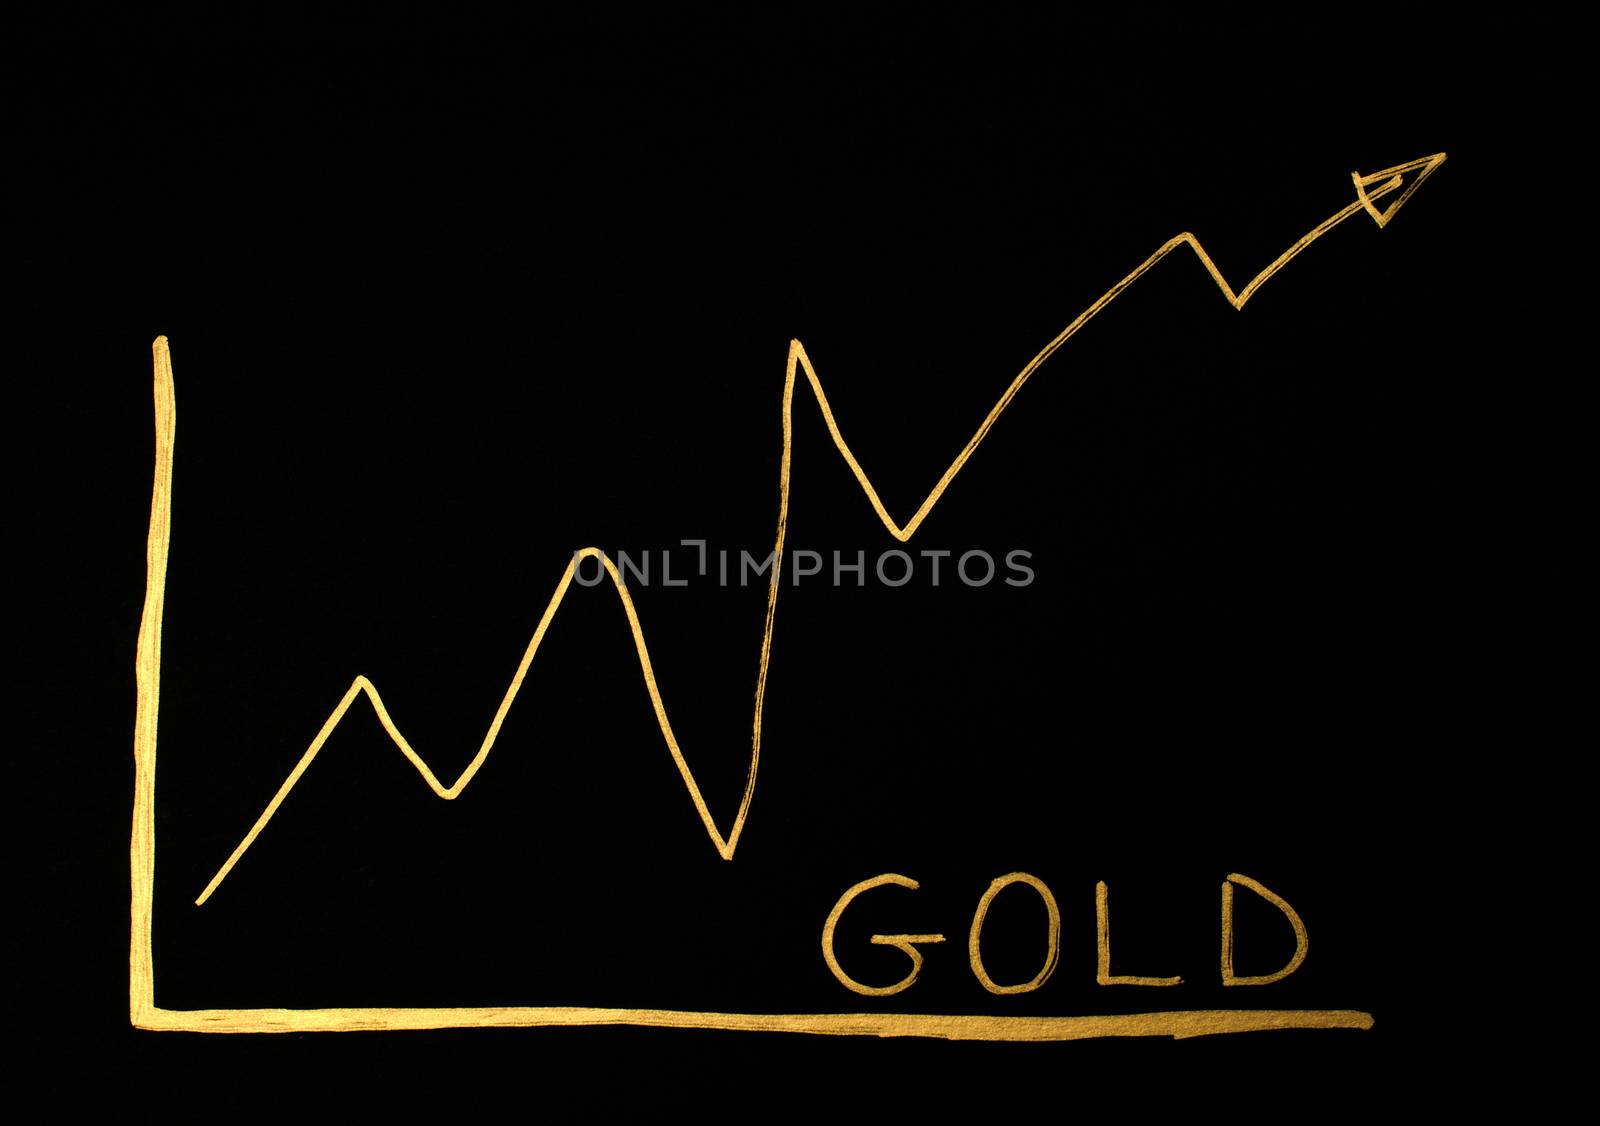 Gold trend exchange  by deyan_georgiev